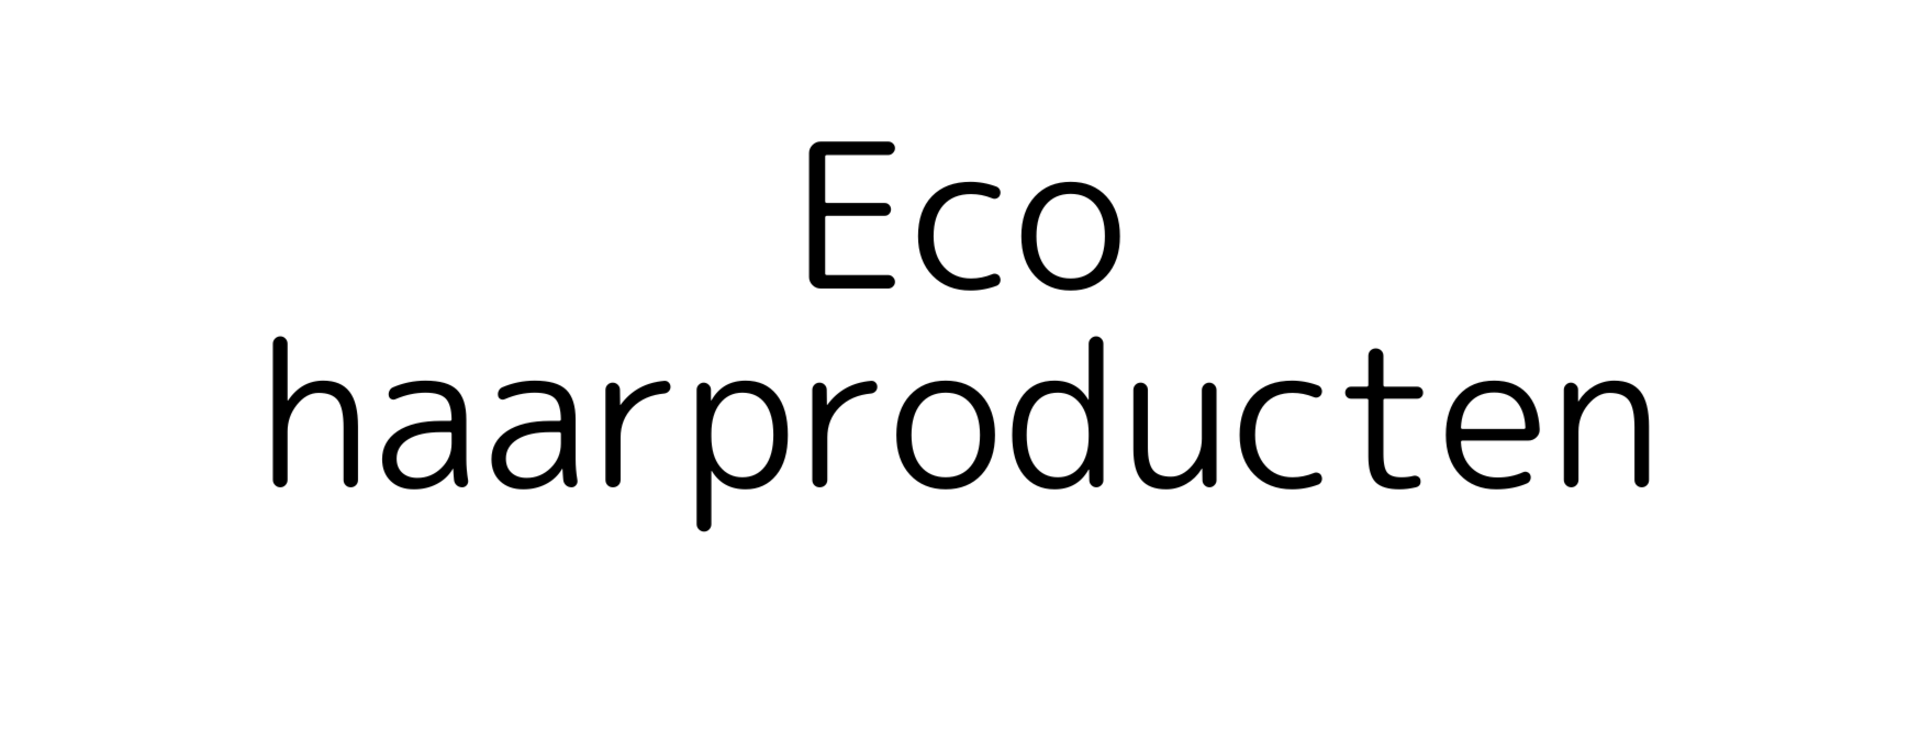 Eco haarproducten